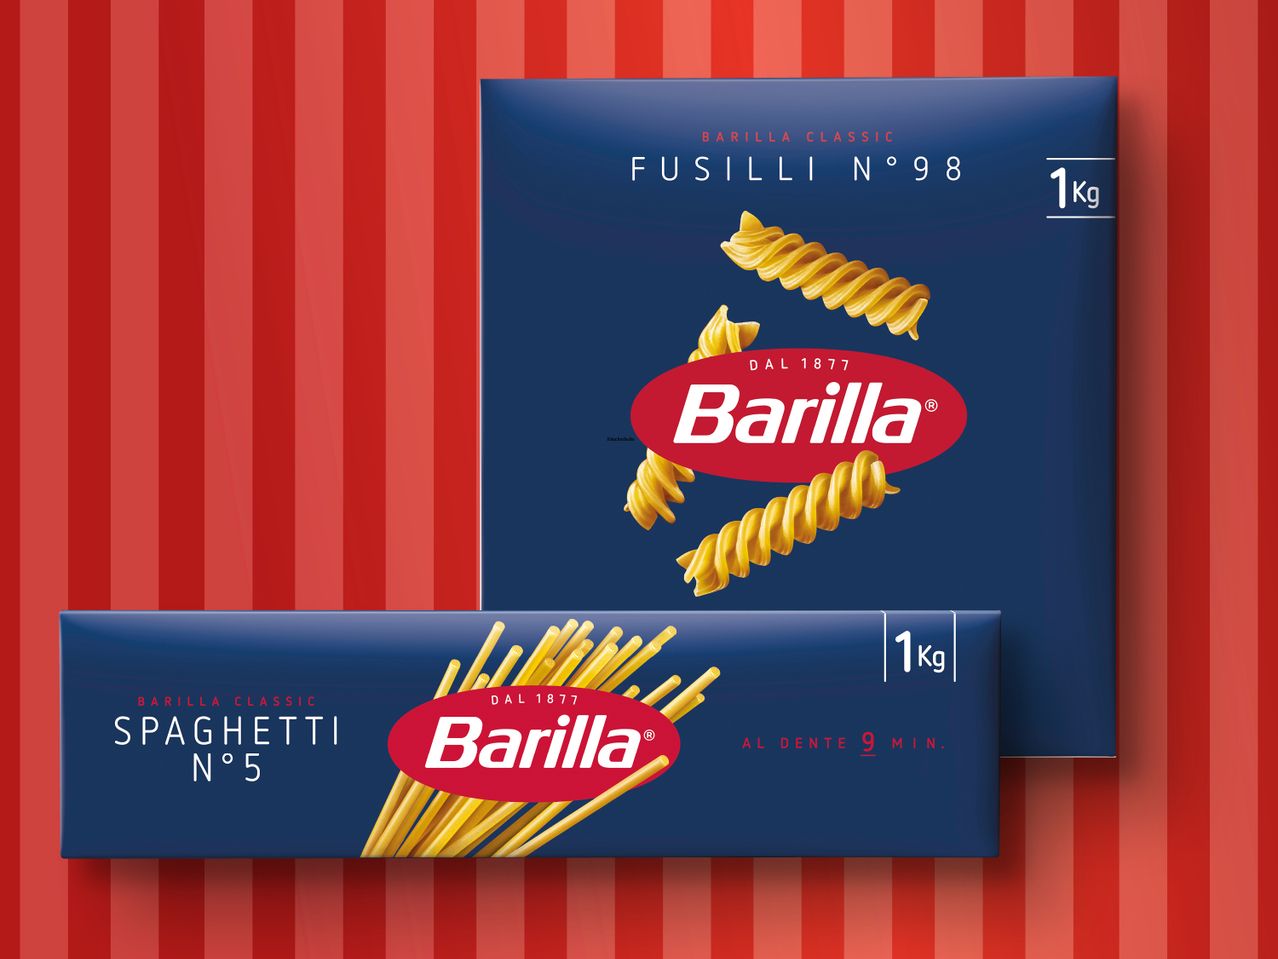 Liste der Produkte im Zusammenhang mit Barilla Pasta